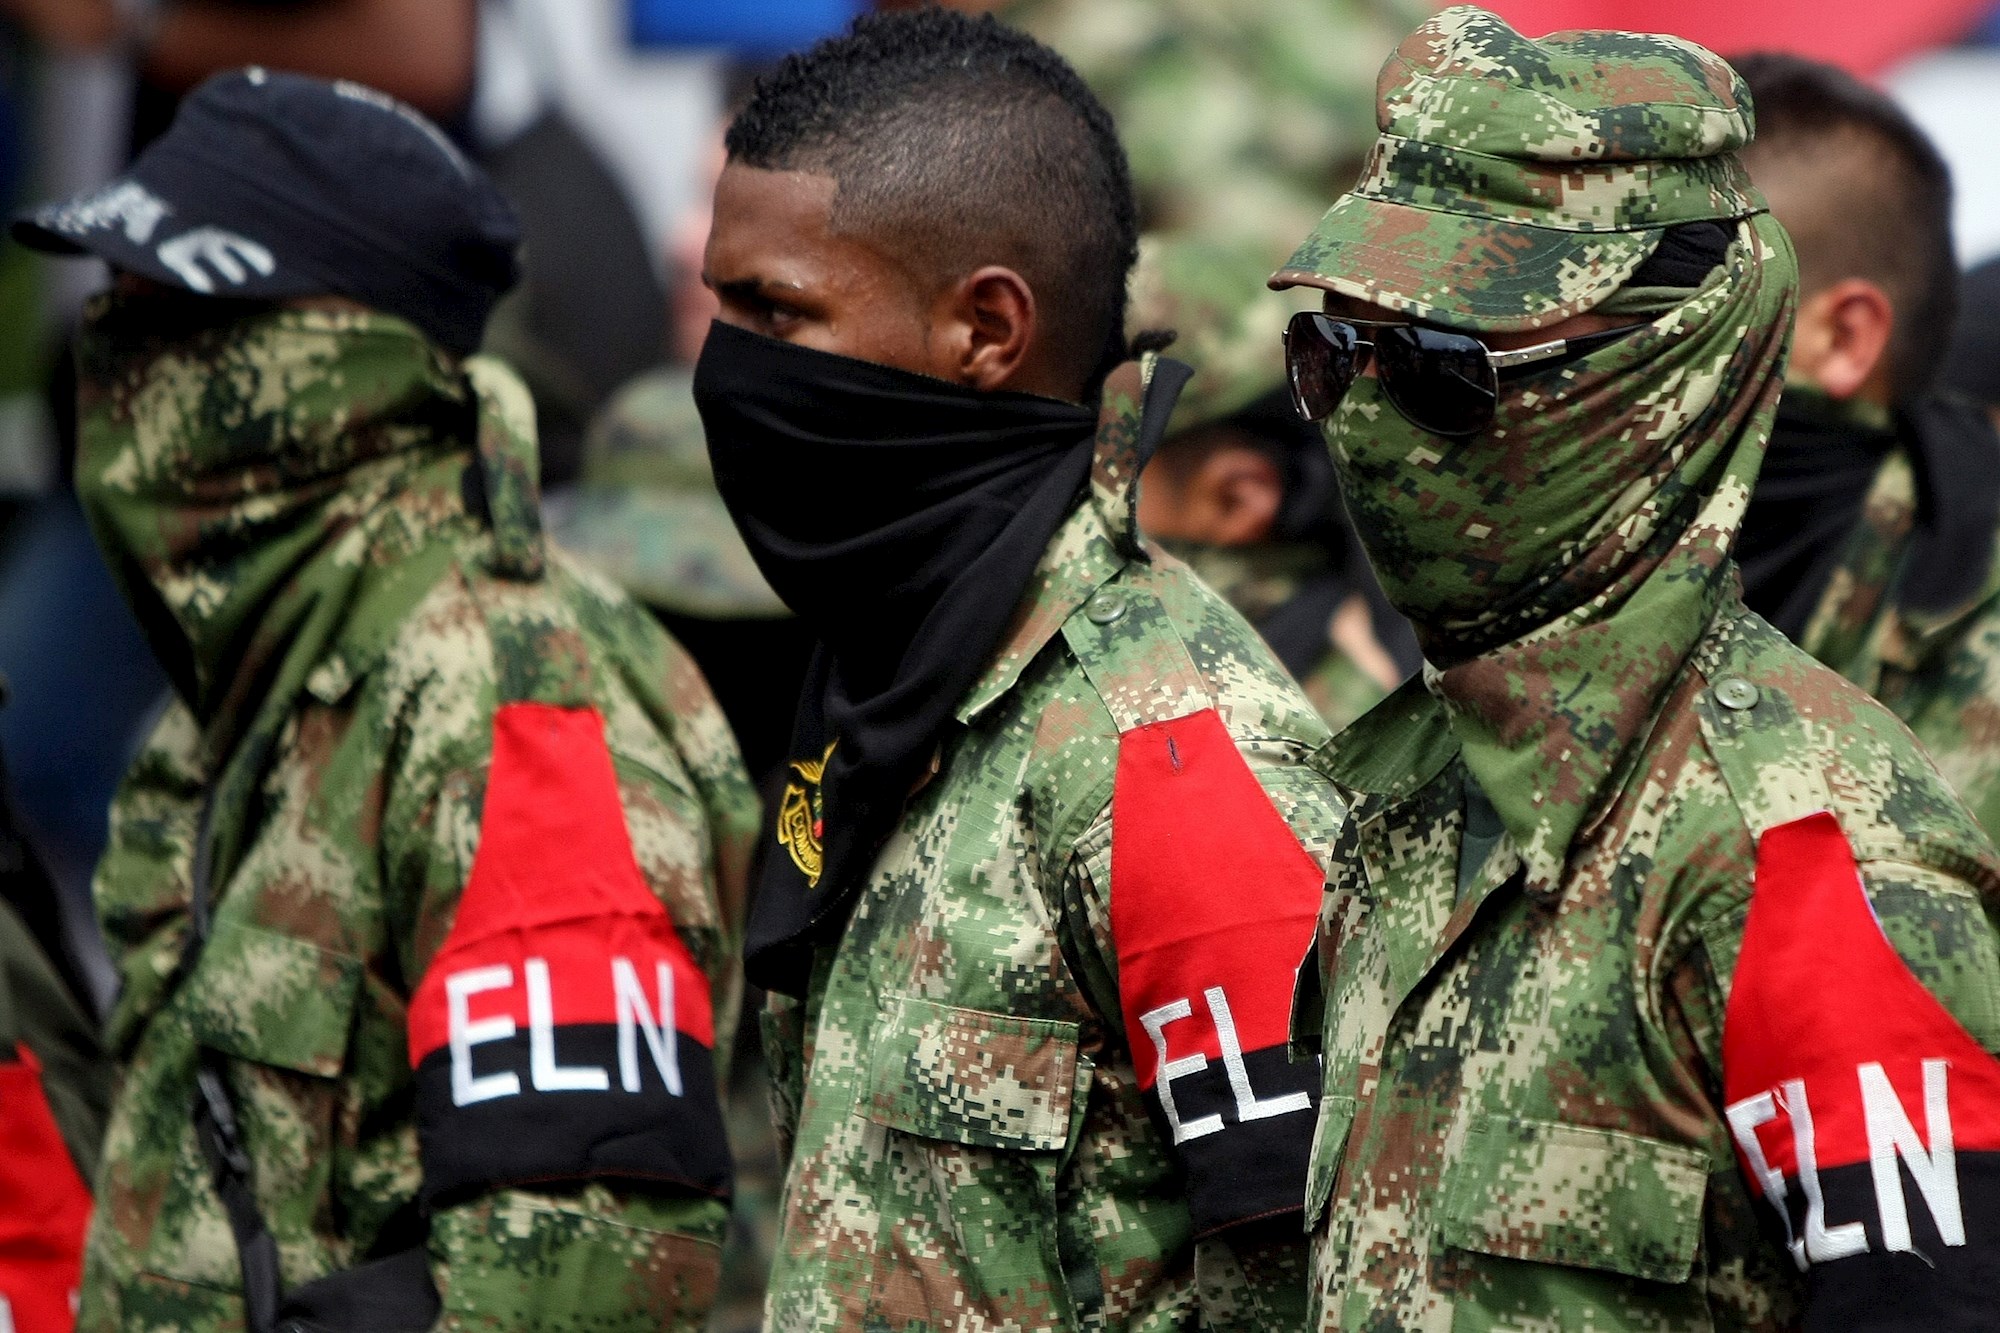 Ejército colombiano bombardeó campamento del ELN: Abatidos dos cabecillas y otros guerrilleros